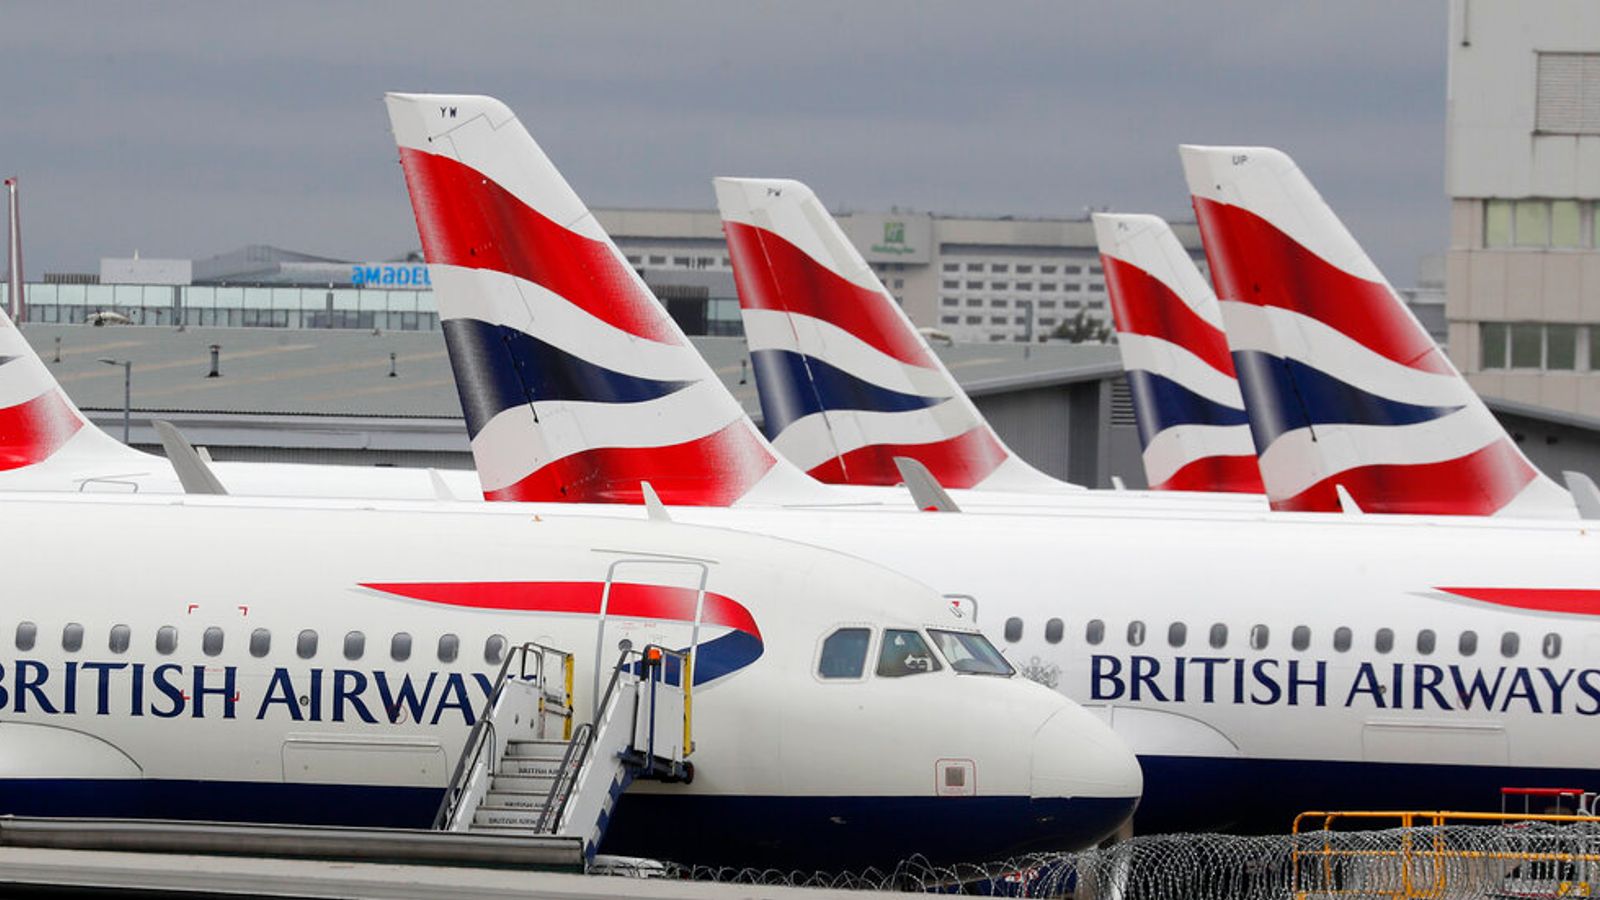 British Airways écope d’une amende de 1,1 million de dollars par le gouvernement américain |  Actualité économique